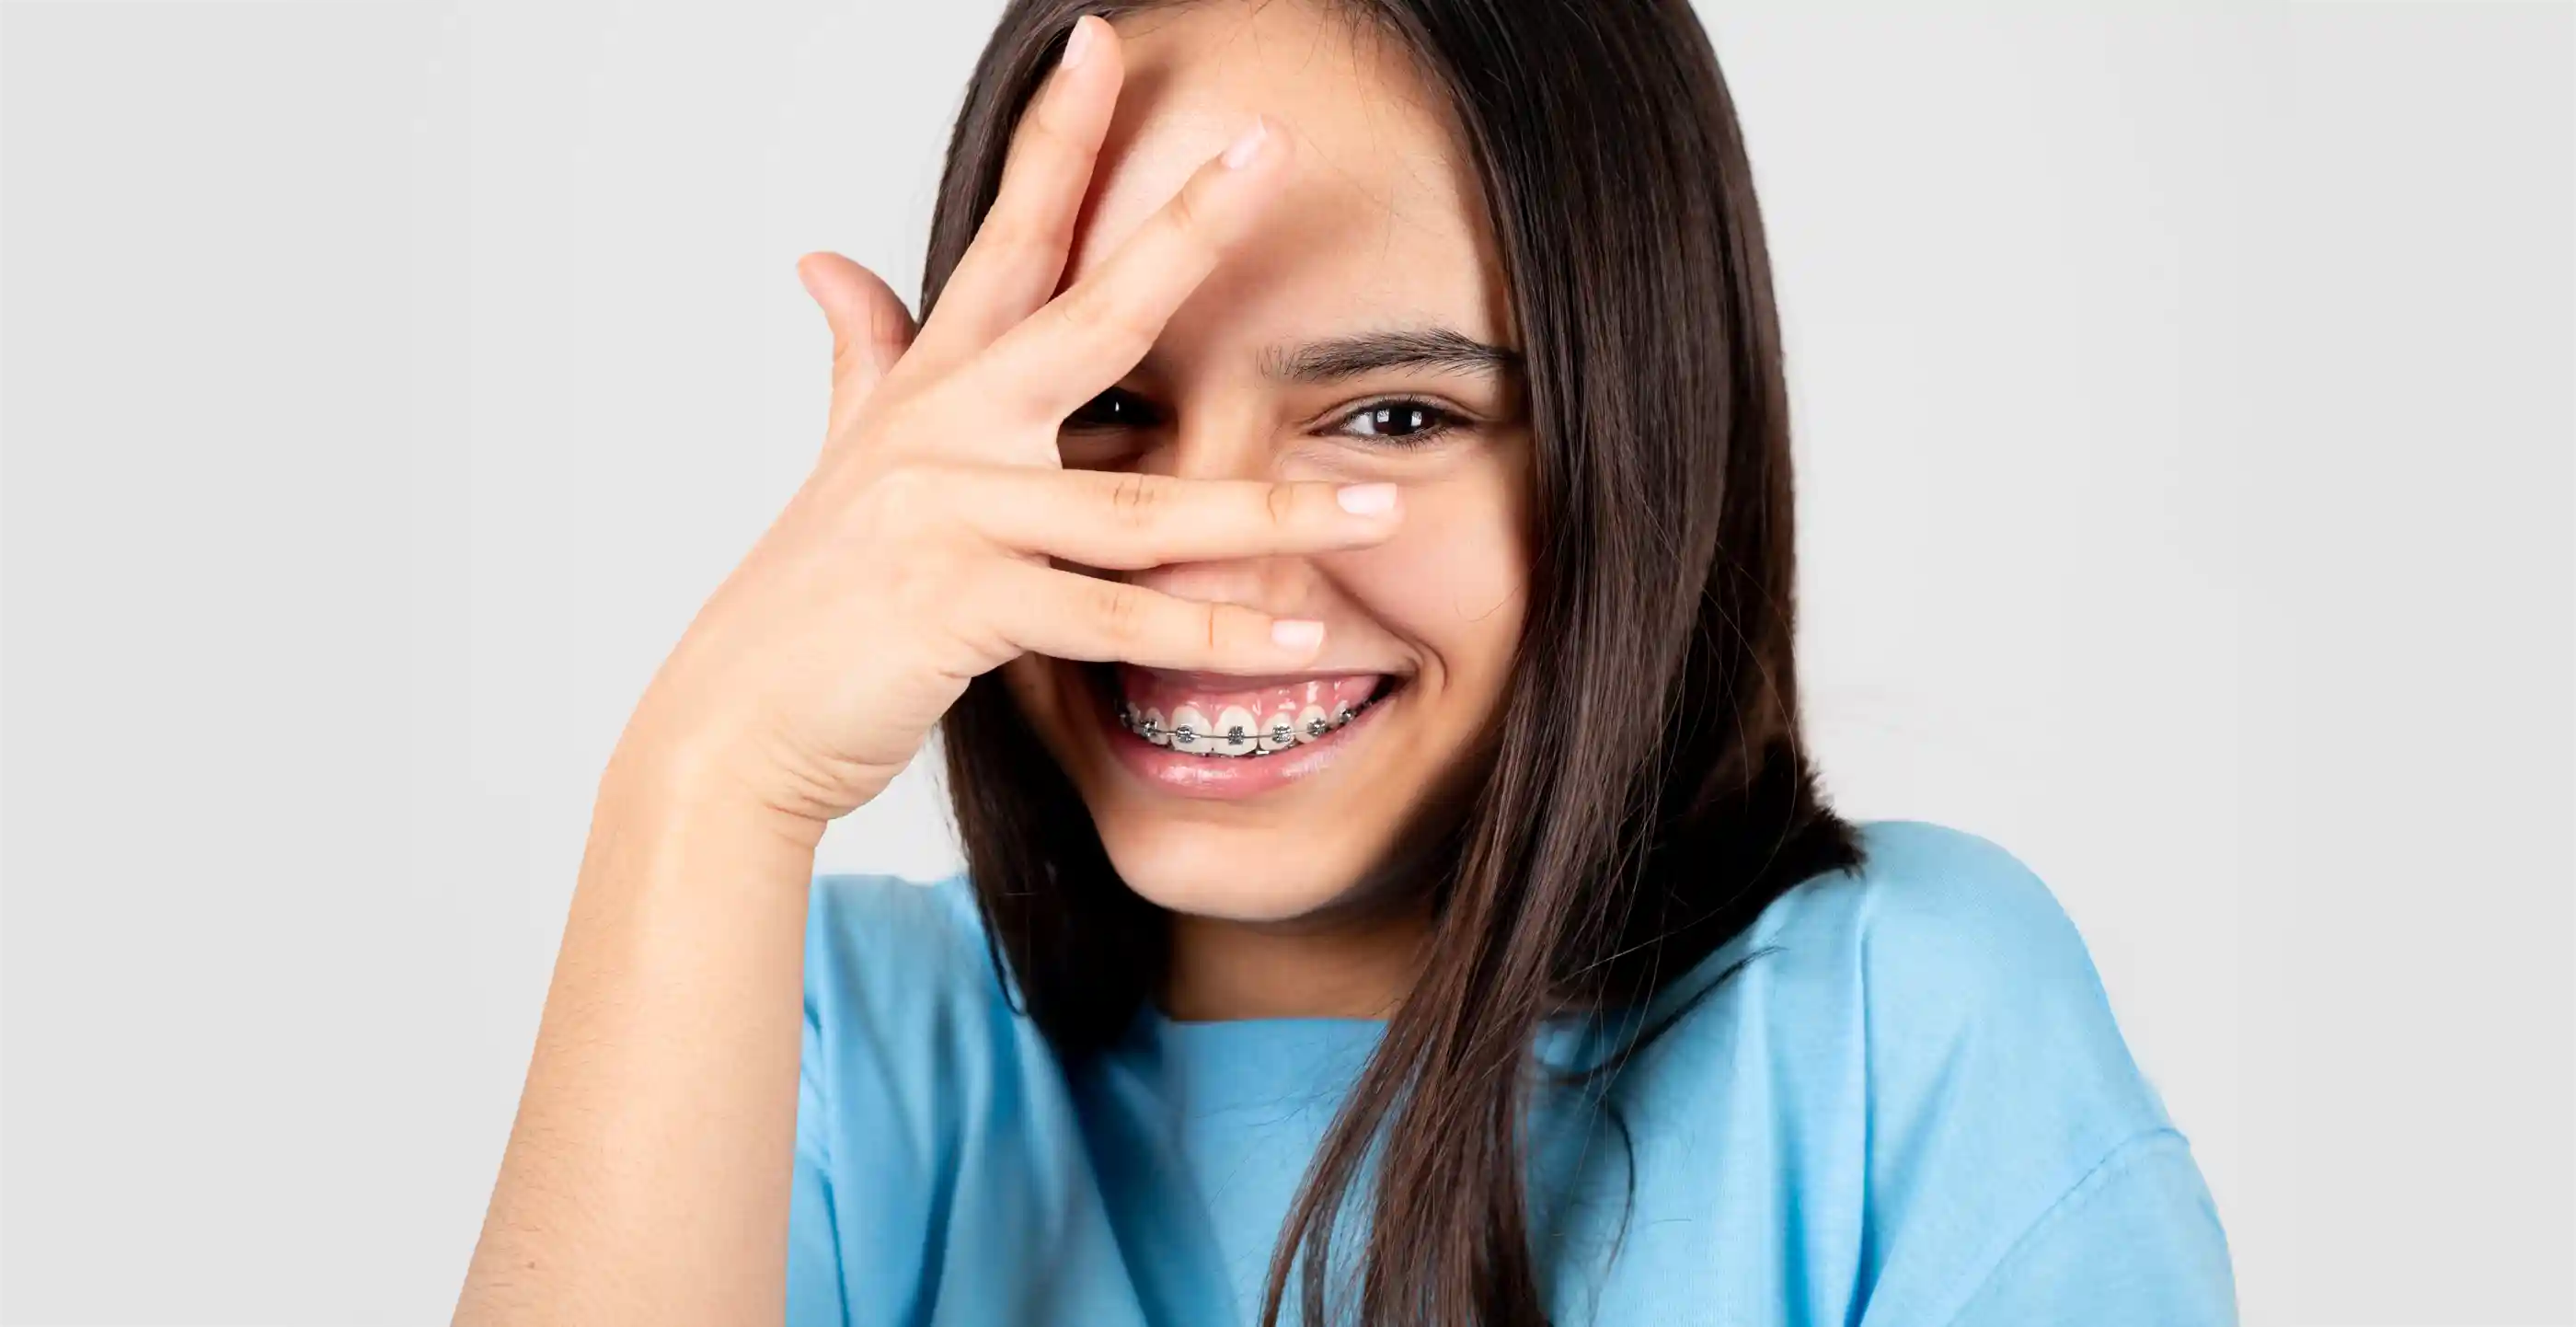 Porträt eines beschämten und lustigen Teenagers, der eine Zahnspange zeigt.